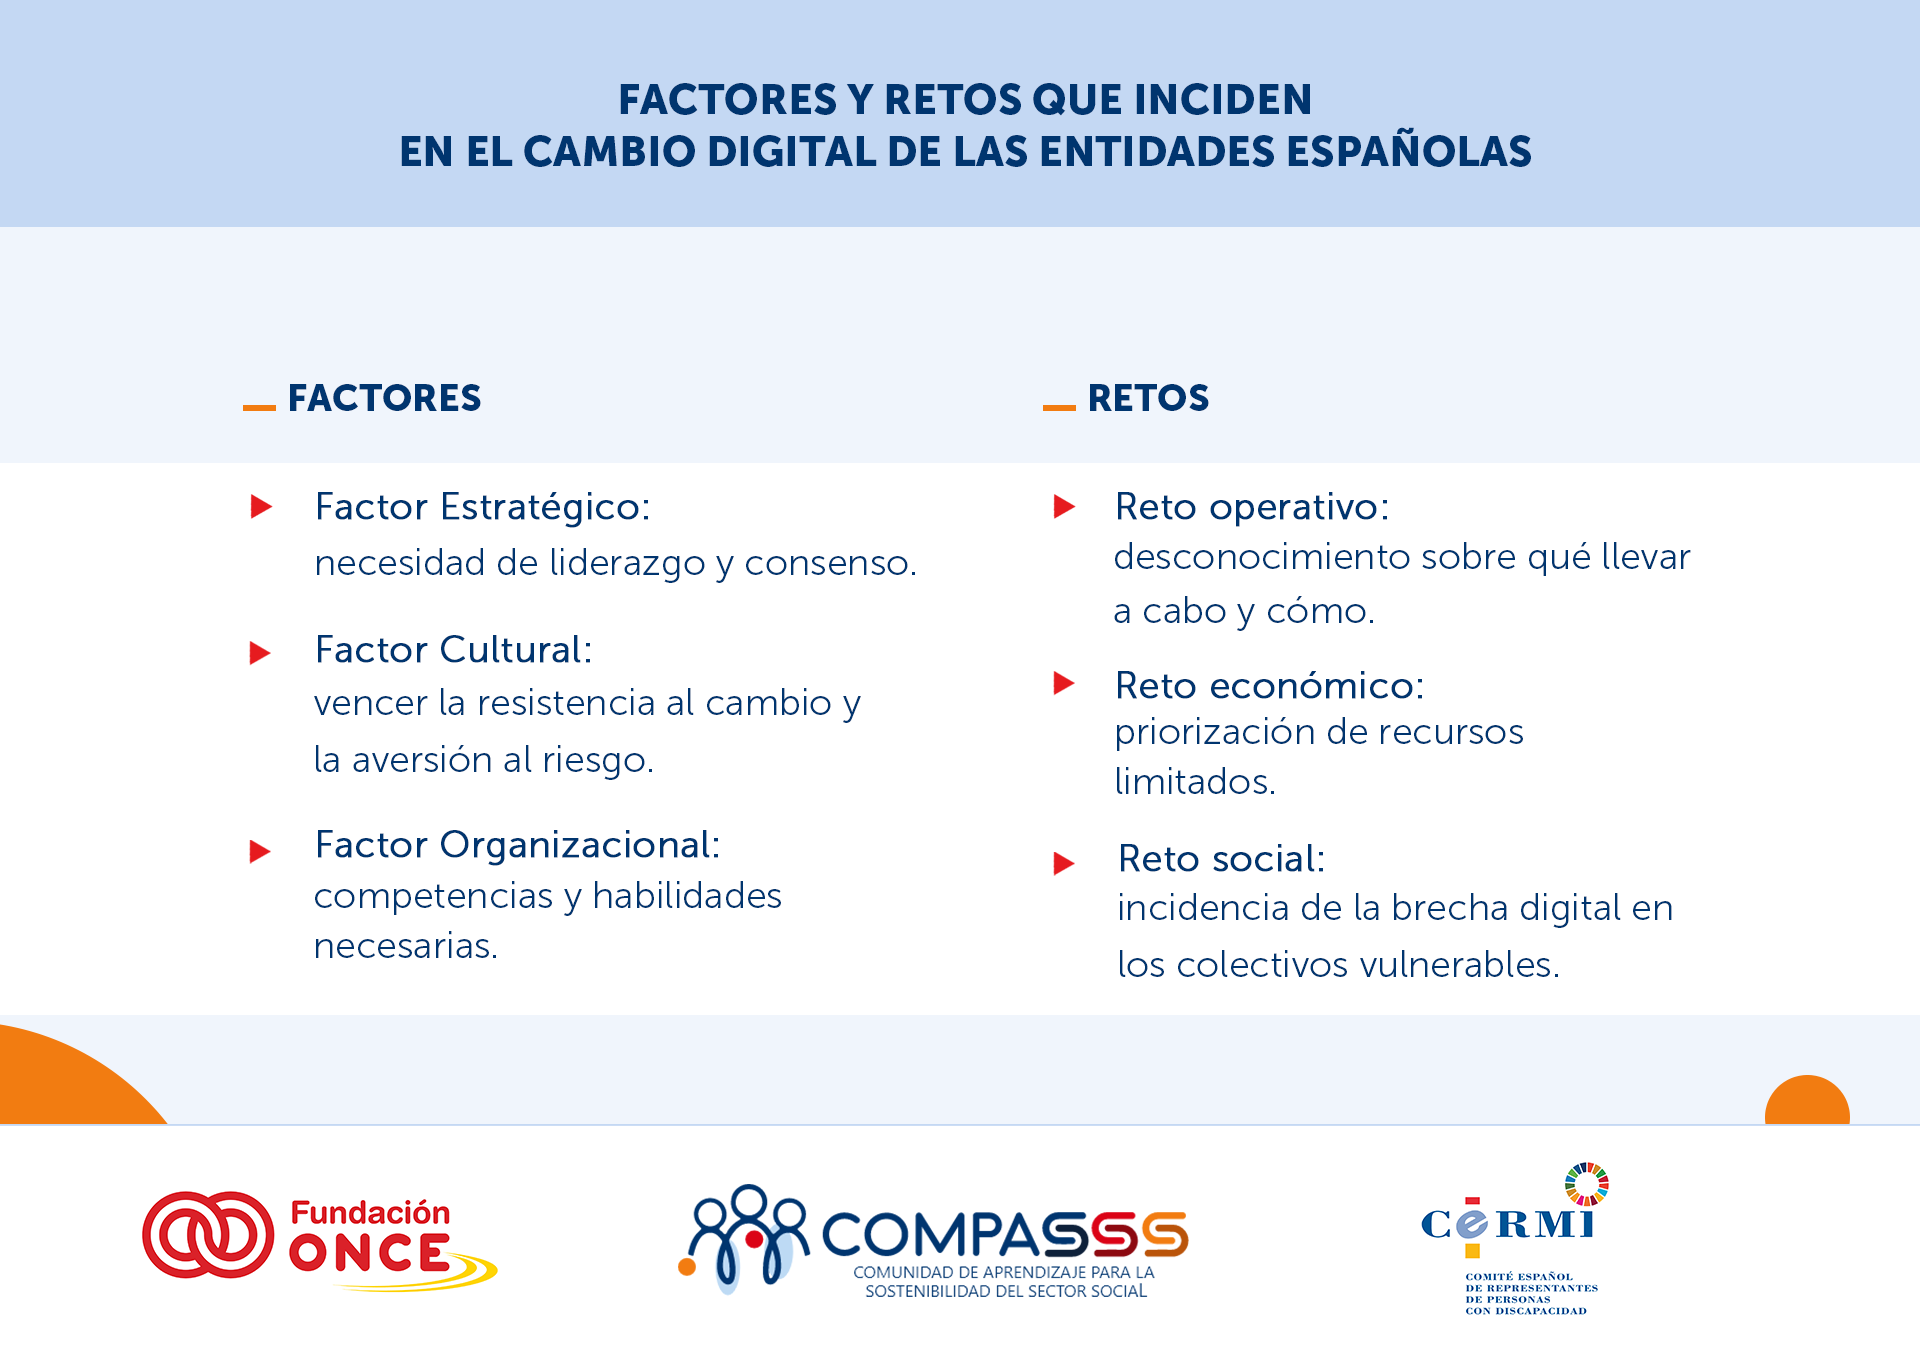 Factores y Retos que inciden en el cambio digital de las entidades españolas